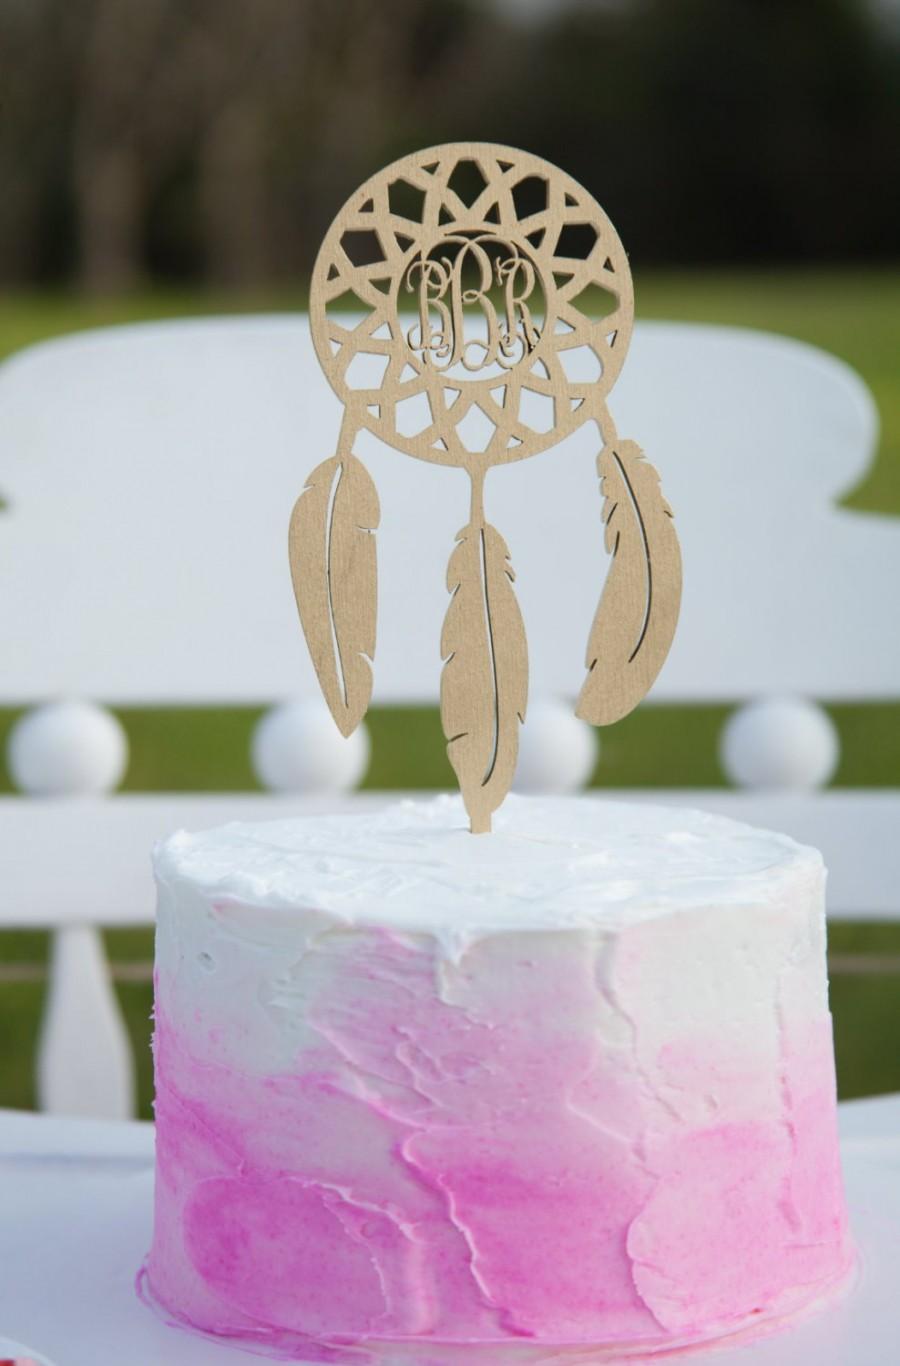 زفاف - Personalized Cake Topper - Monogram Dream Catcher Cake Topper - Birthday - Wedding - Wooden